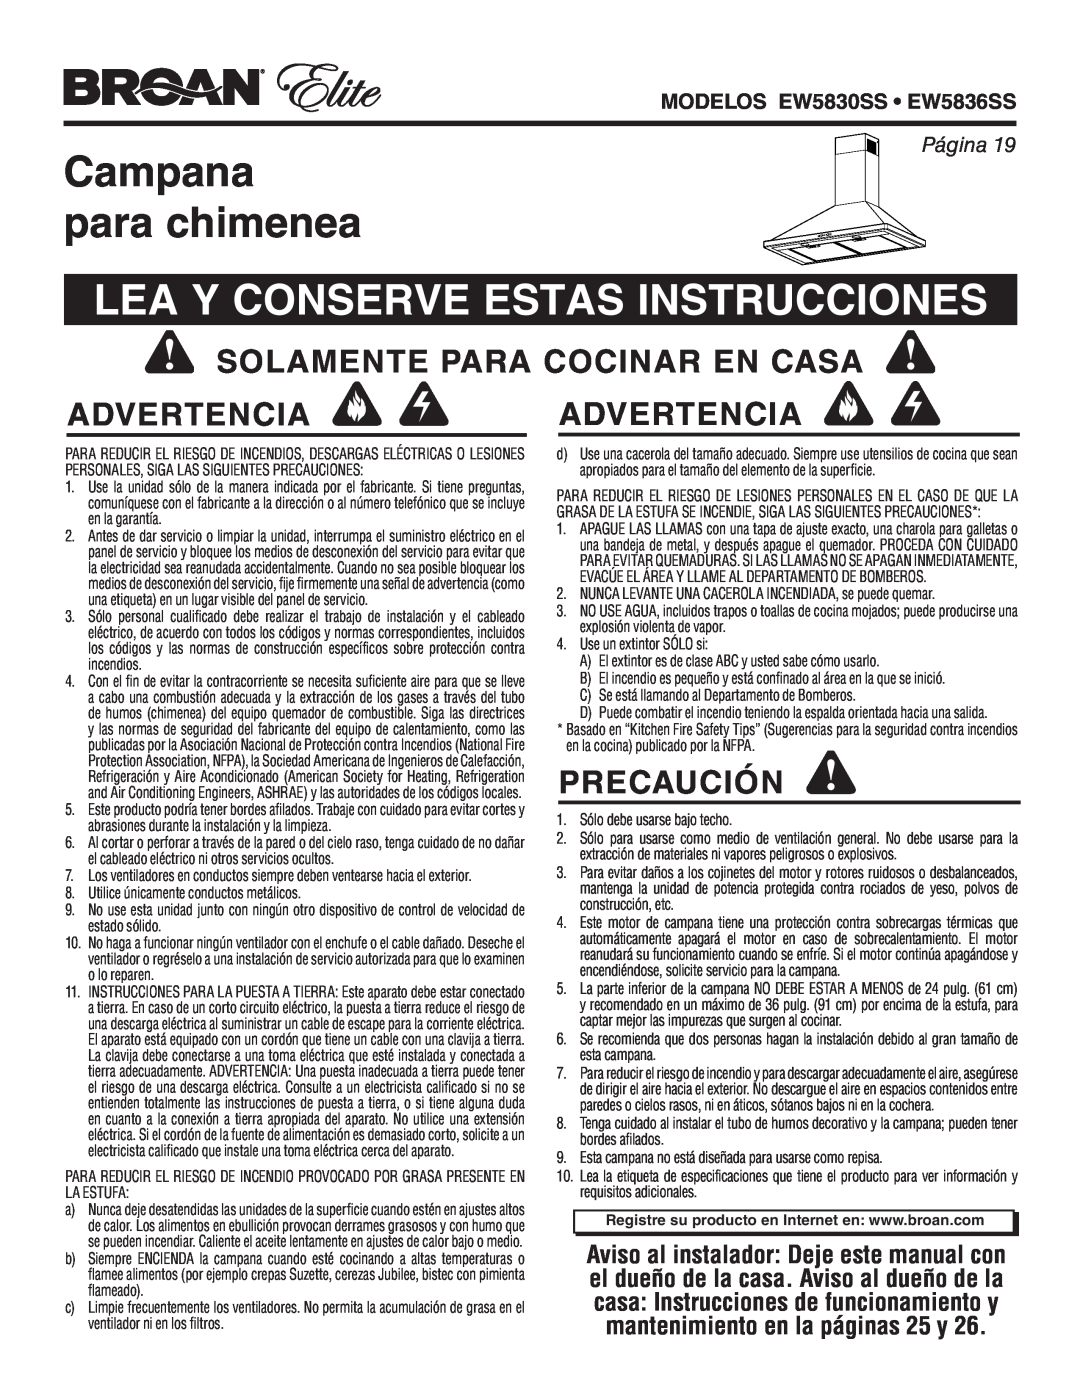 Broan warranty Campana para chimenea, Lea Y Conserve Estas Instrucciones, Precaución, MODELOS EW5830SS EW5836SS, Página 